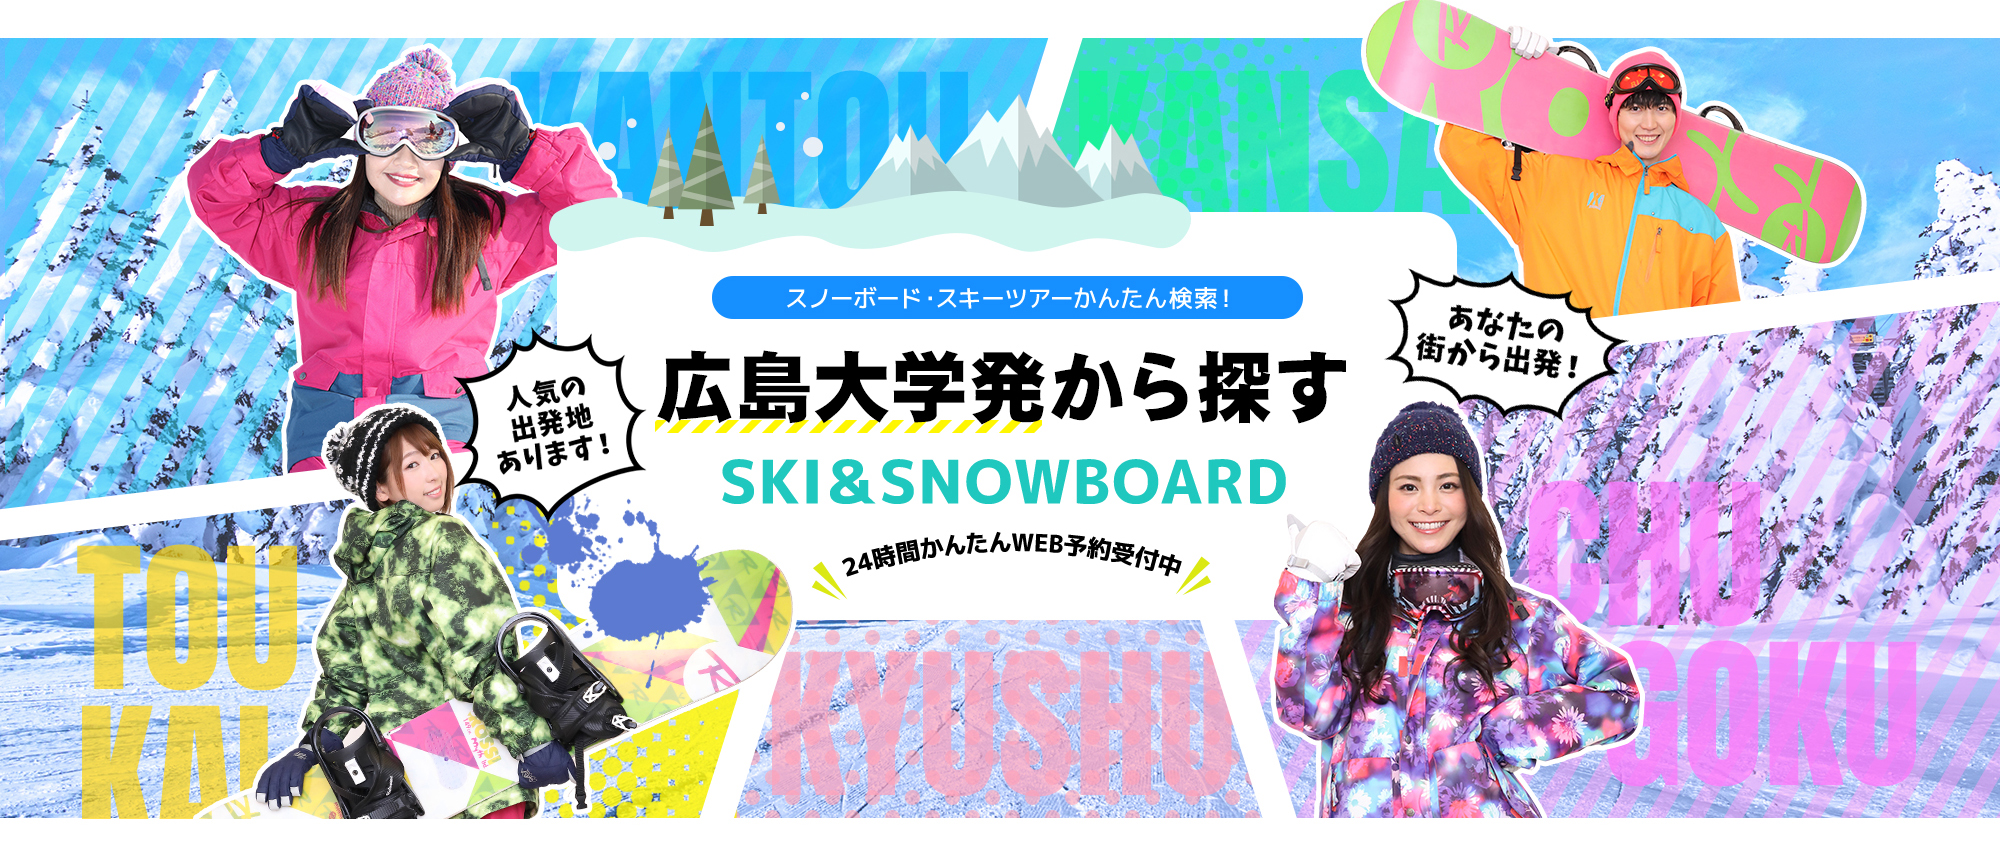 スノーボード・スキーツアーかんたん検索！ 広島大学発から探す SKI&SNOWBOARD